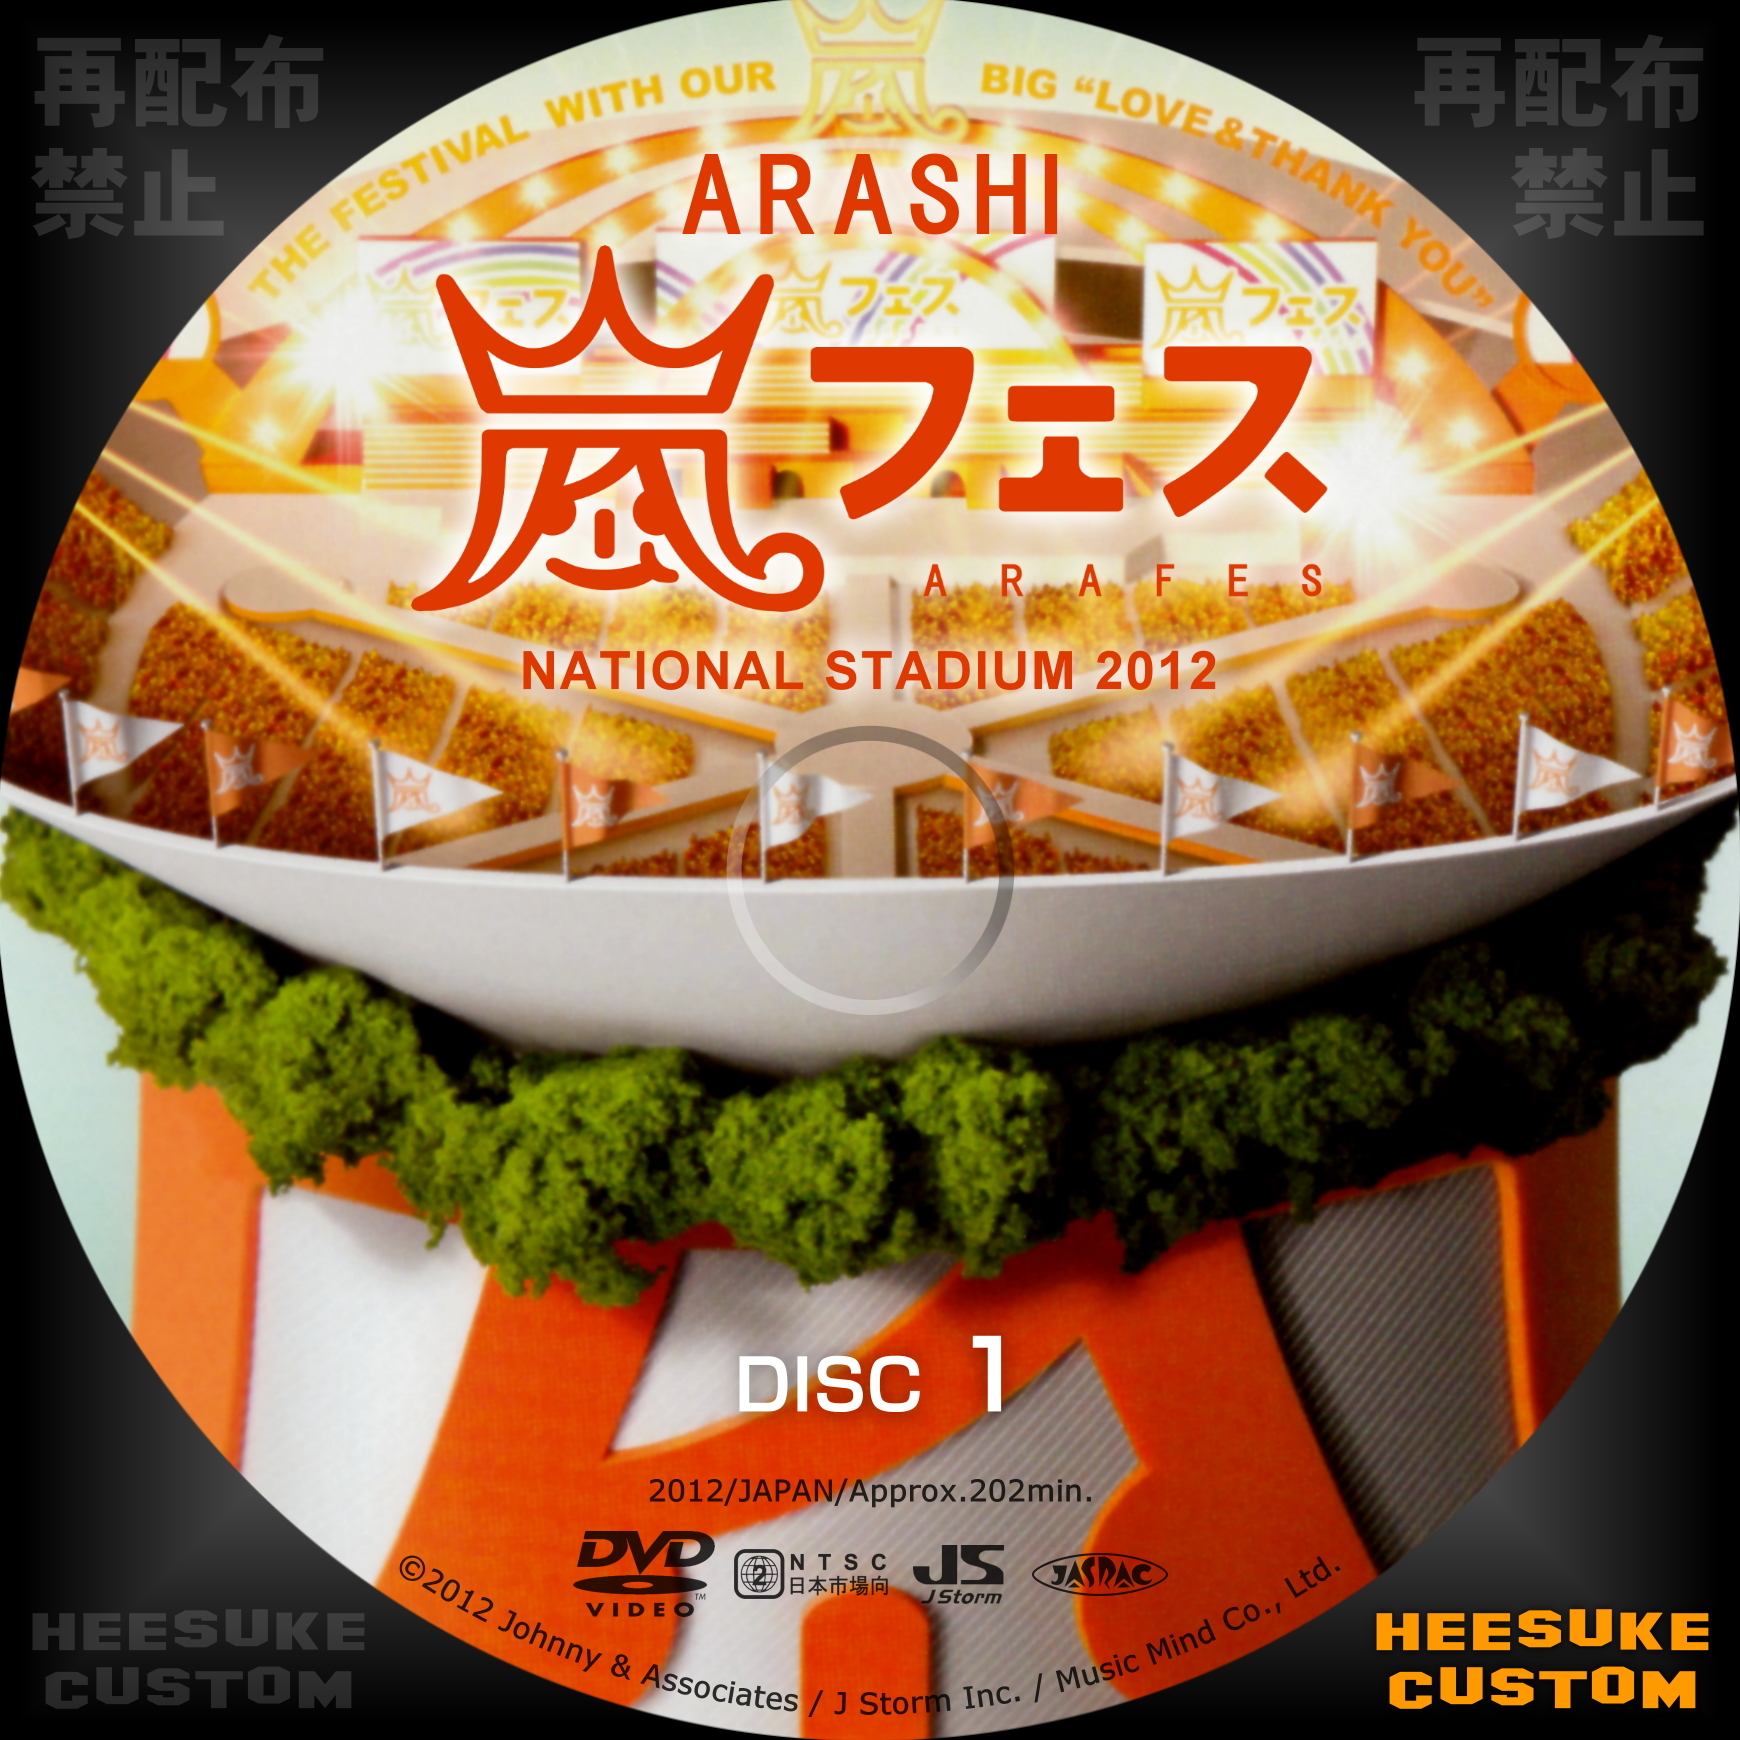 ARASHI 嵐フェス NATIONAL STADIUM 2012 DVD | hmgrocerant.com